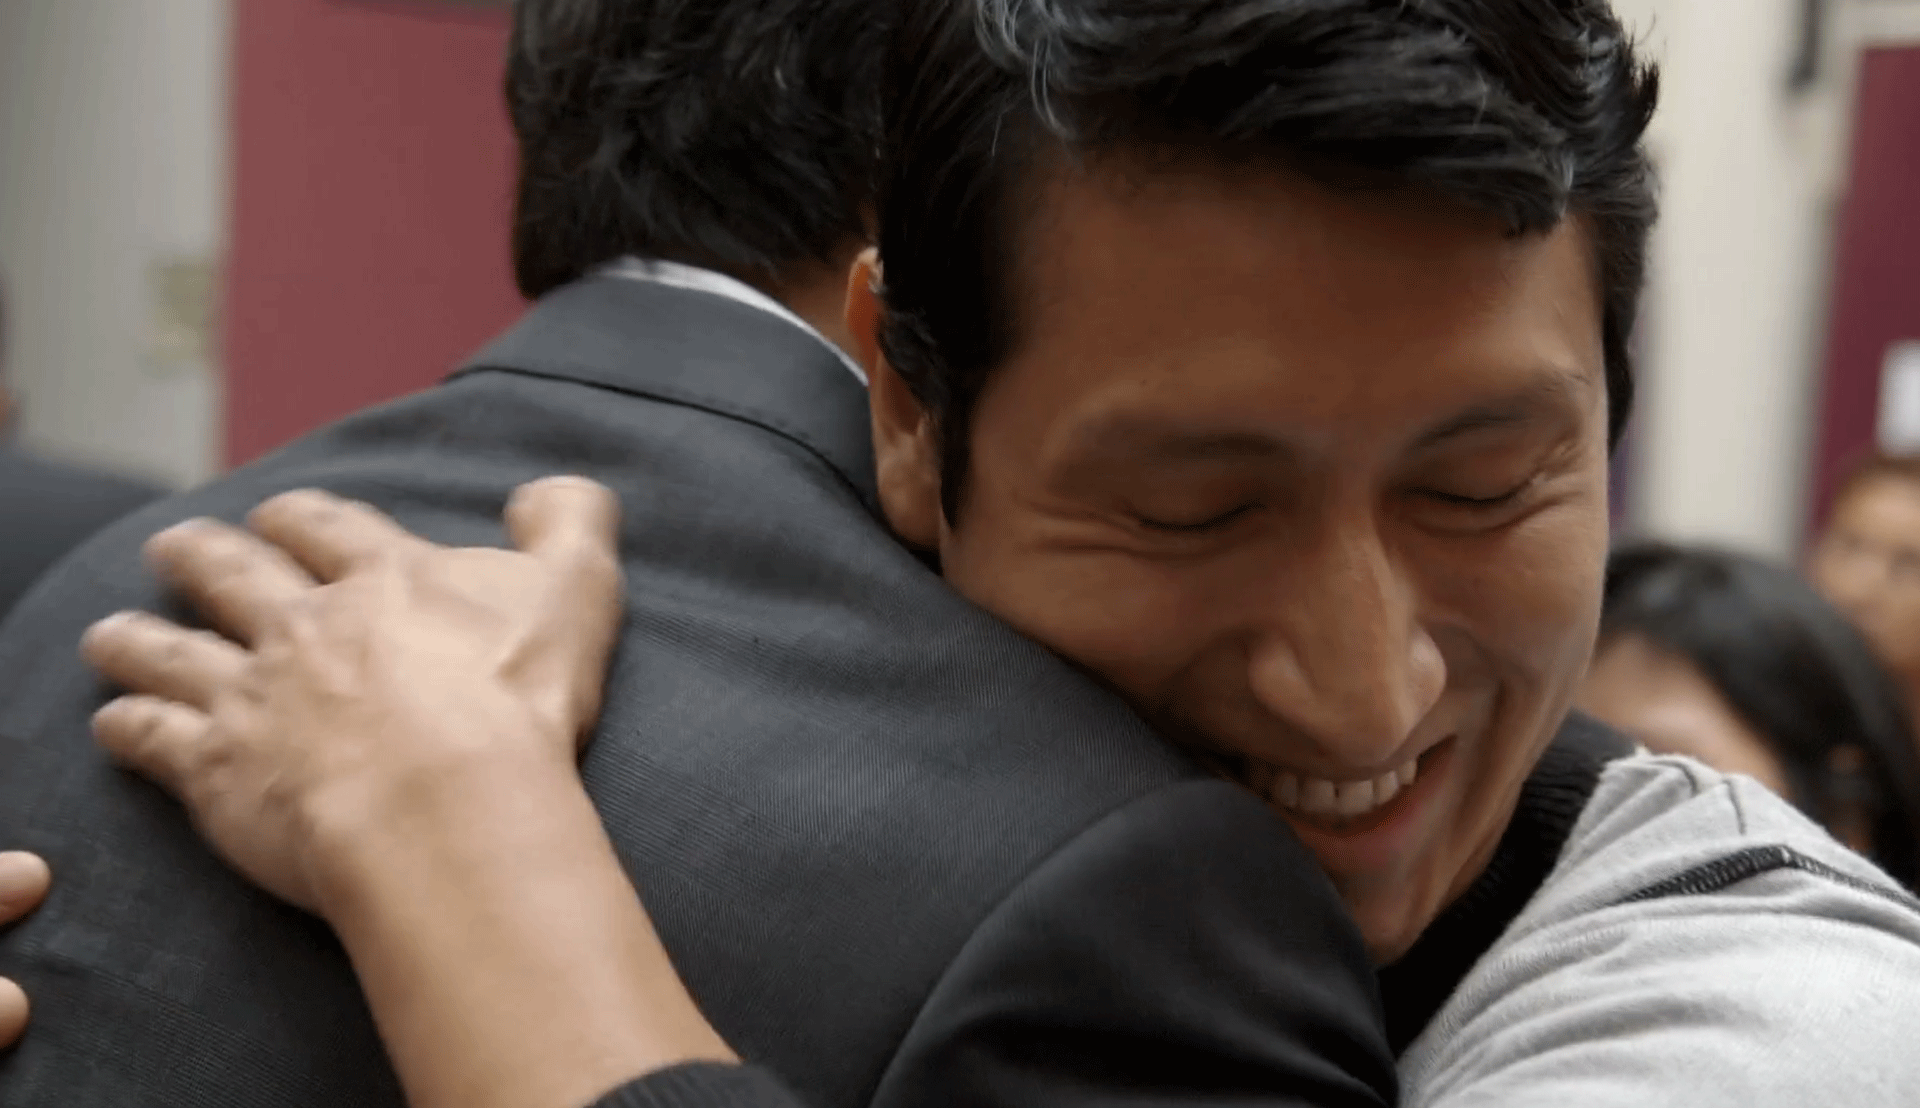 Rutgers Global - Bending the Arc Film Screening, screenshot of two men hugging